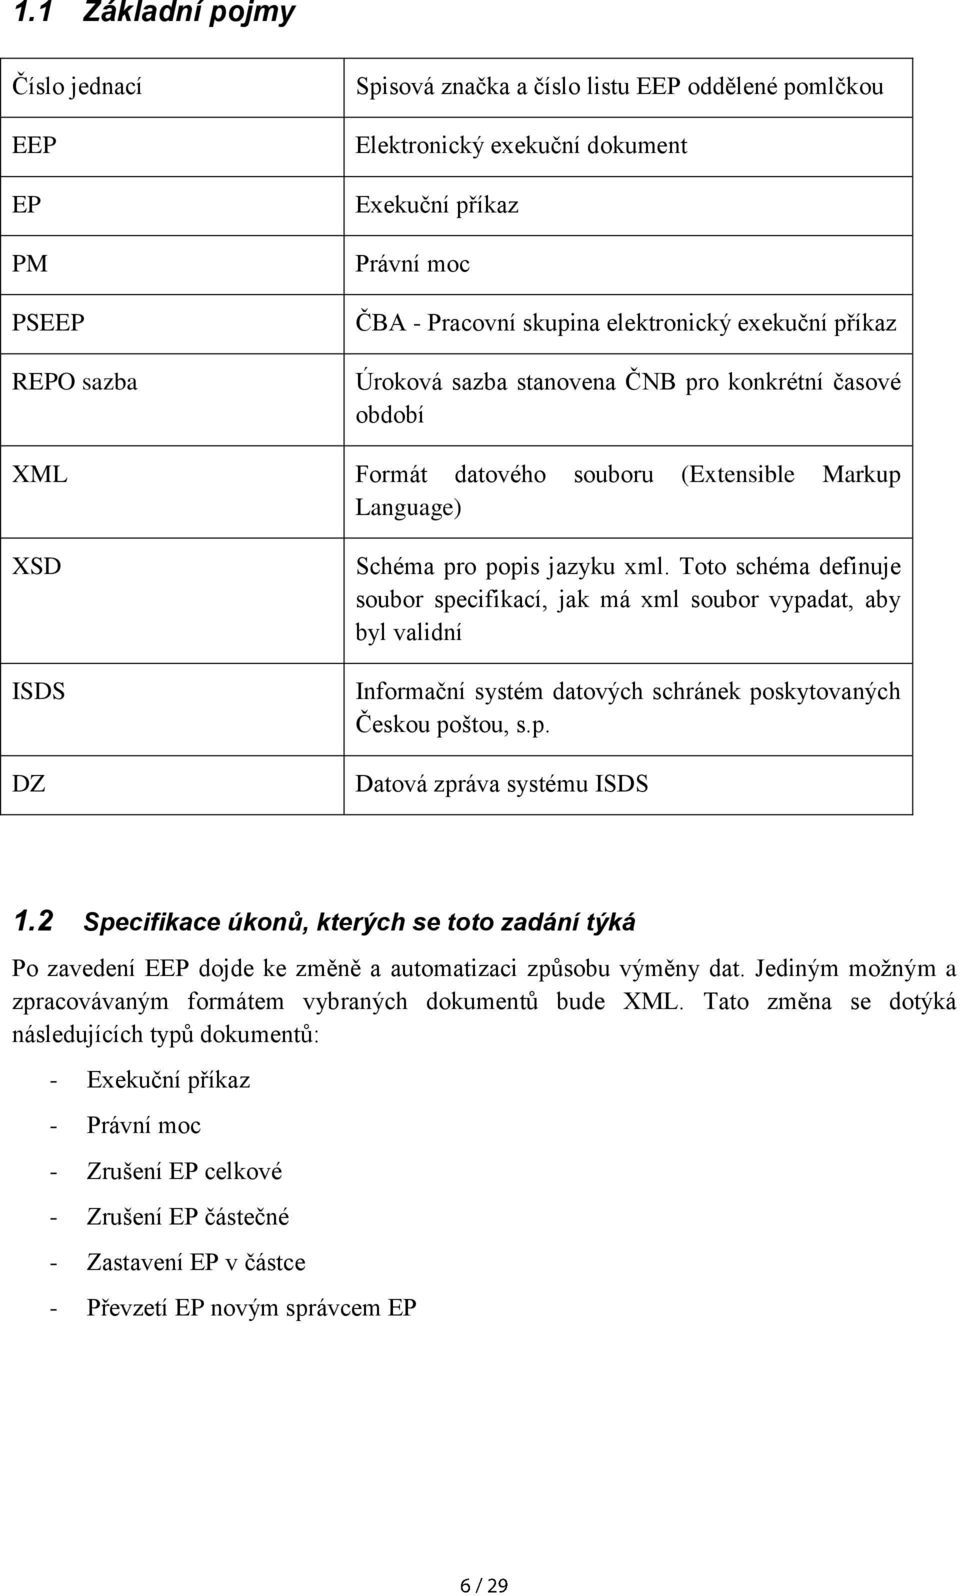 Toto schéma definuje soubor specifikací, jak má xml soubor vypadat, aby byl validní Informační systém datových schránek poskytovaných Českou poštou, s.p. Datová zpráva systému ISDS 1.